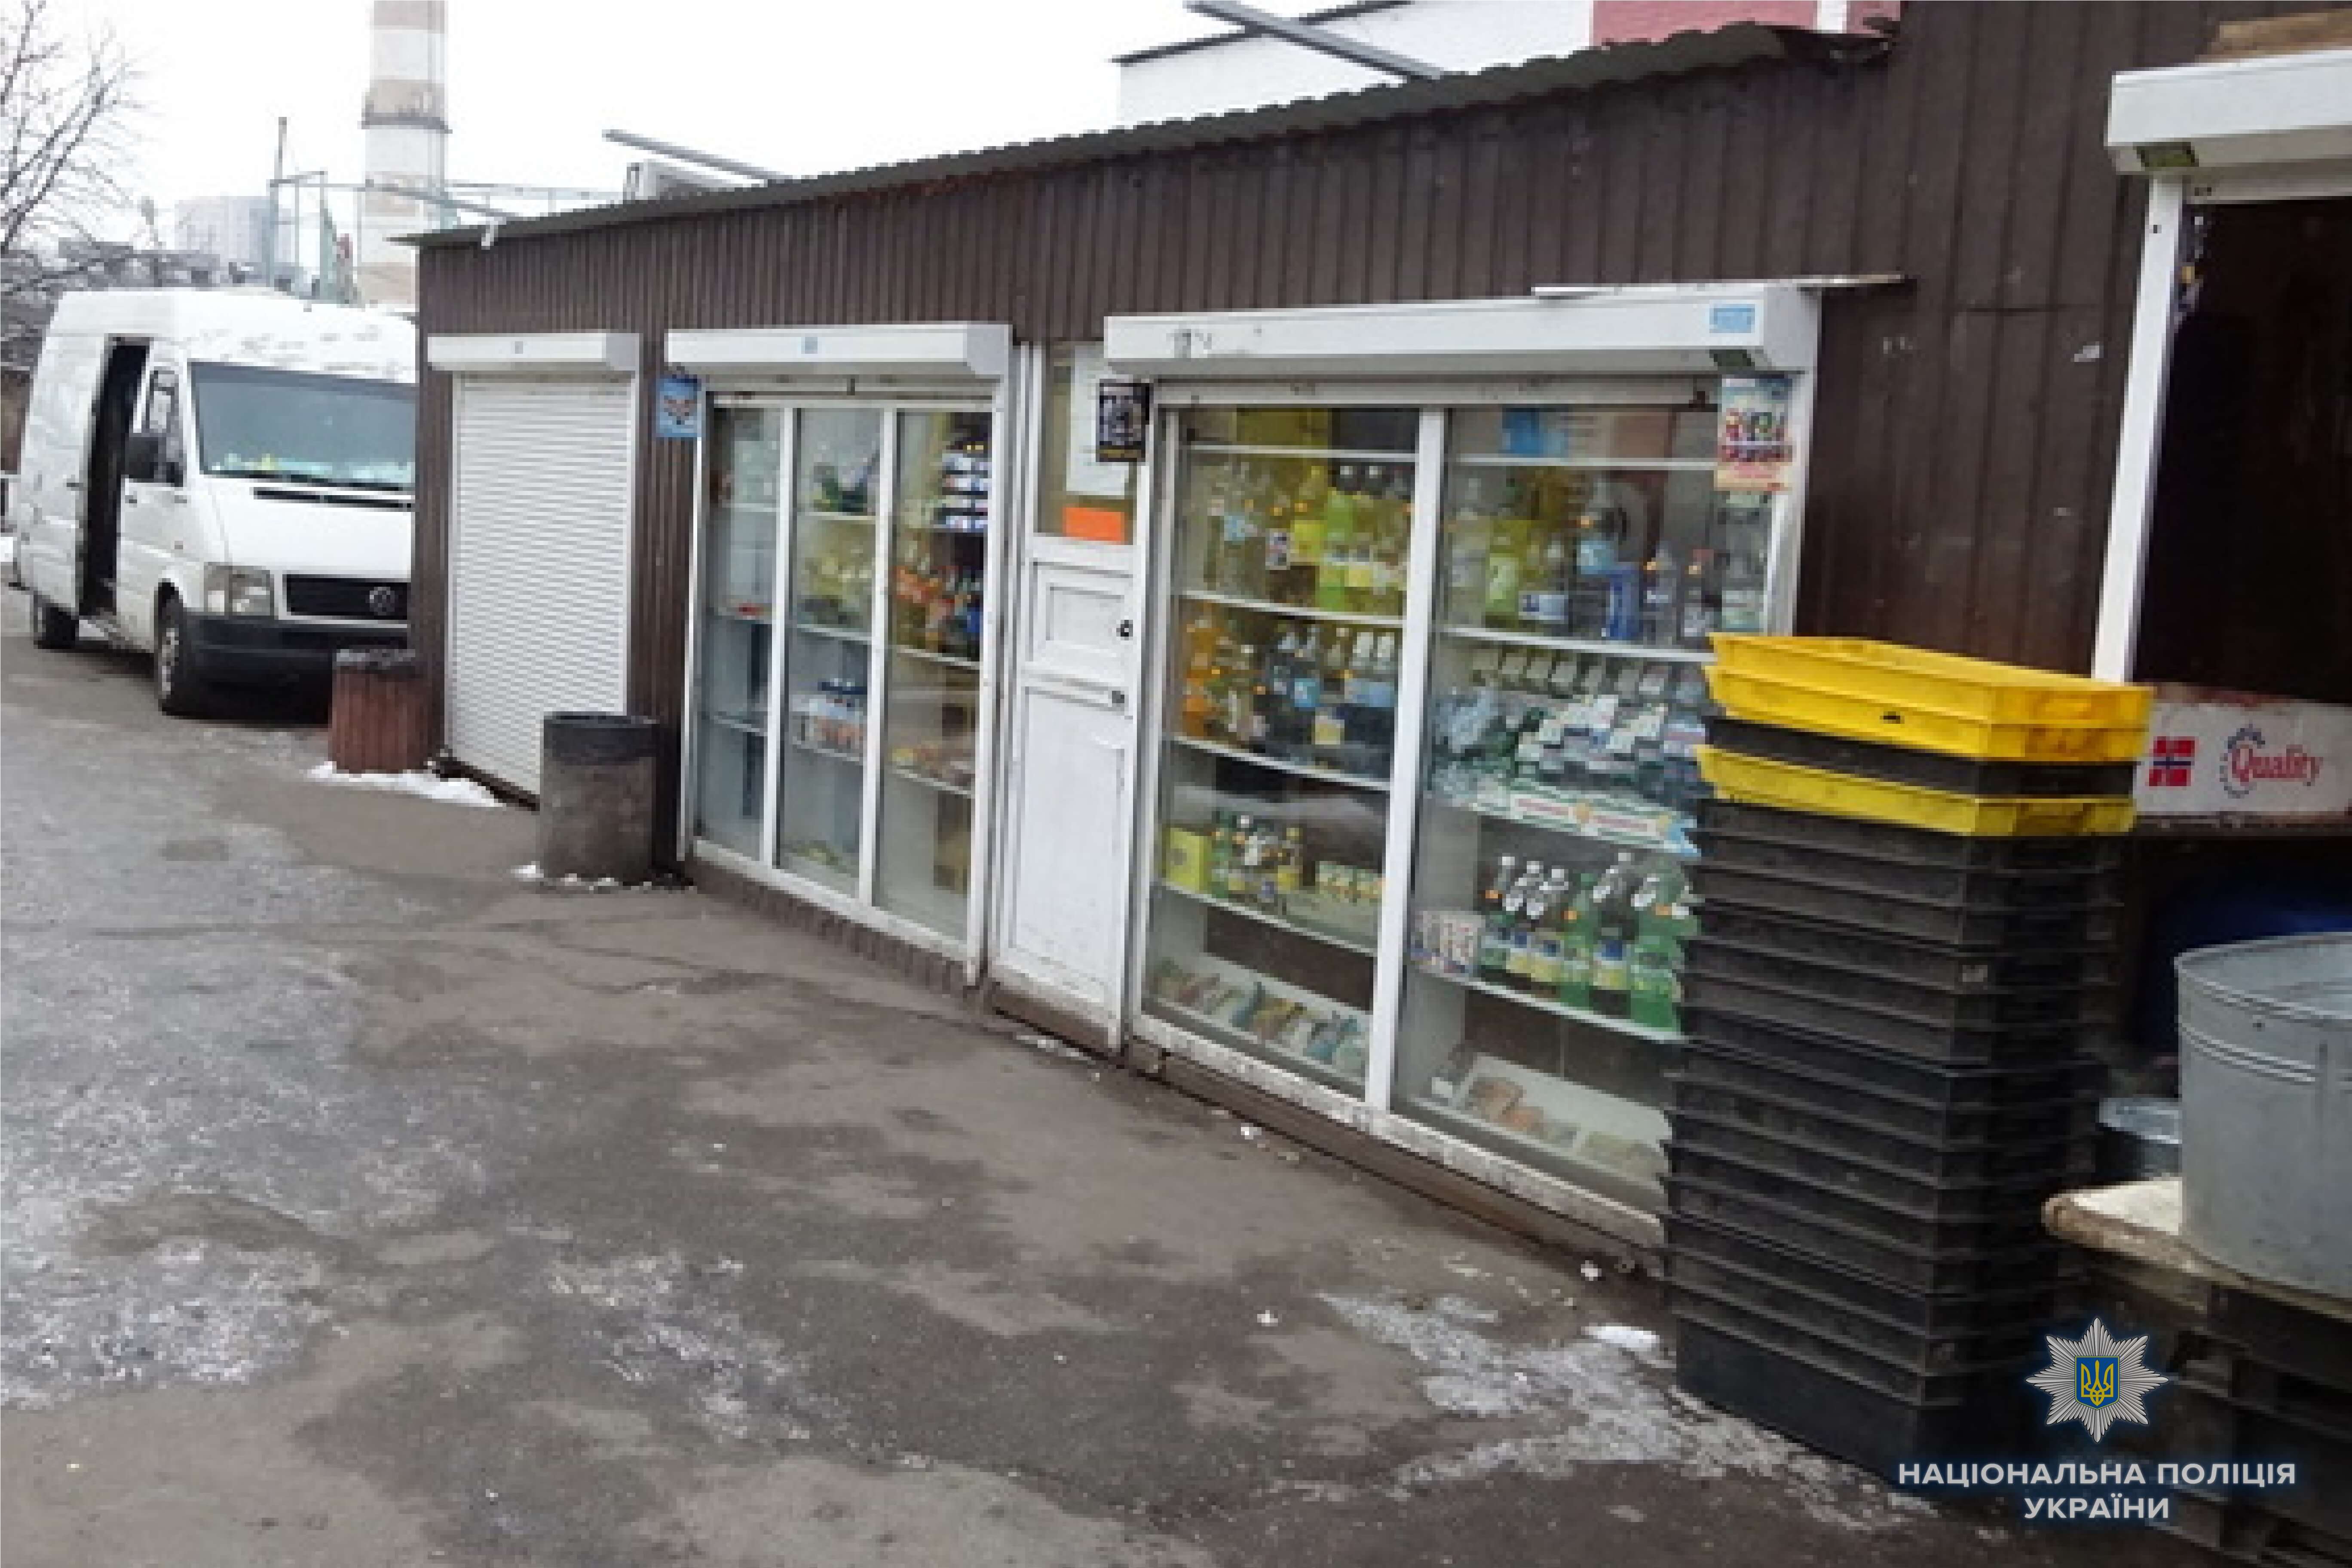 Правоохранители Киева “накрыли” магазин, где без лицензии торговали алкоголем (фото, видео)